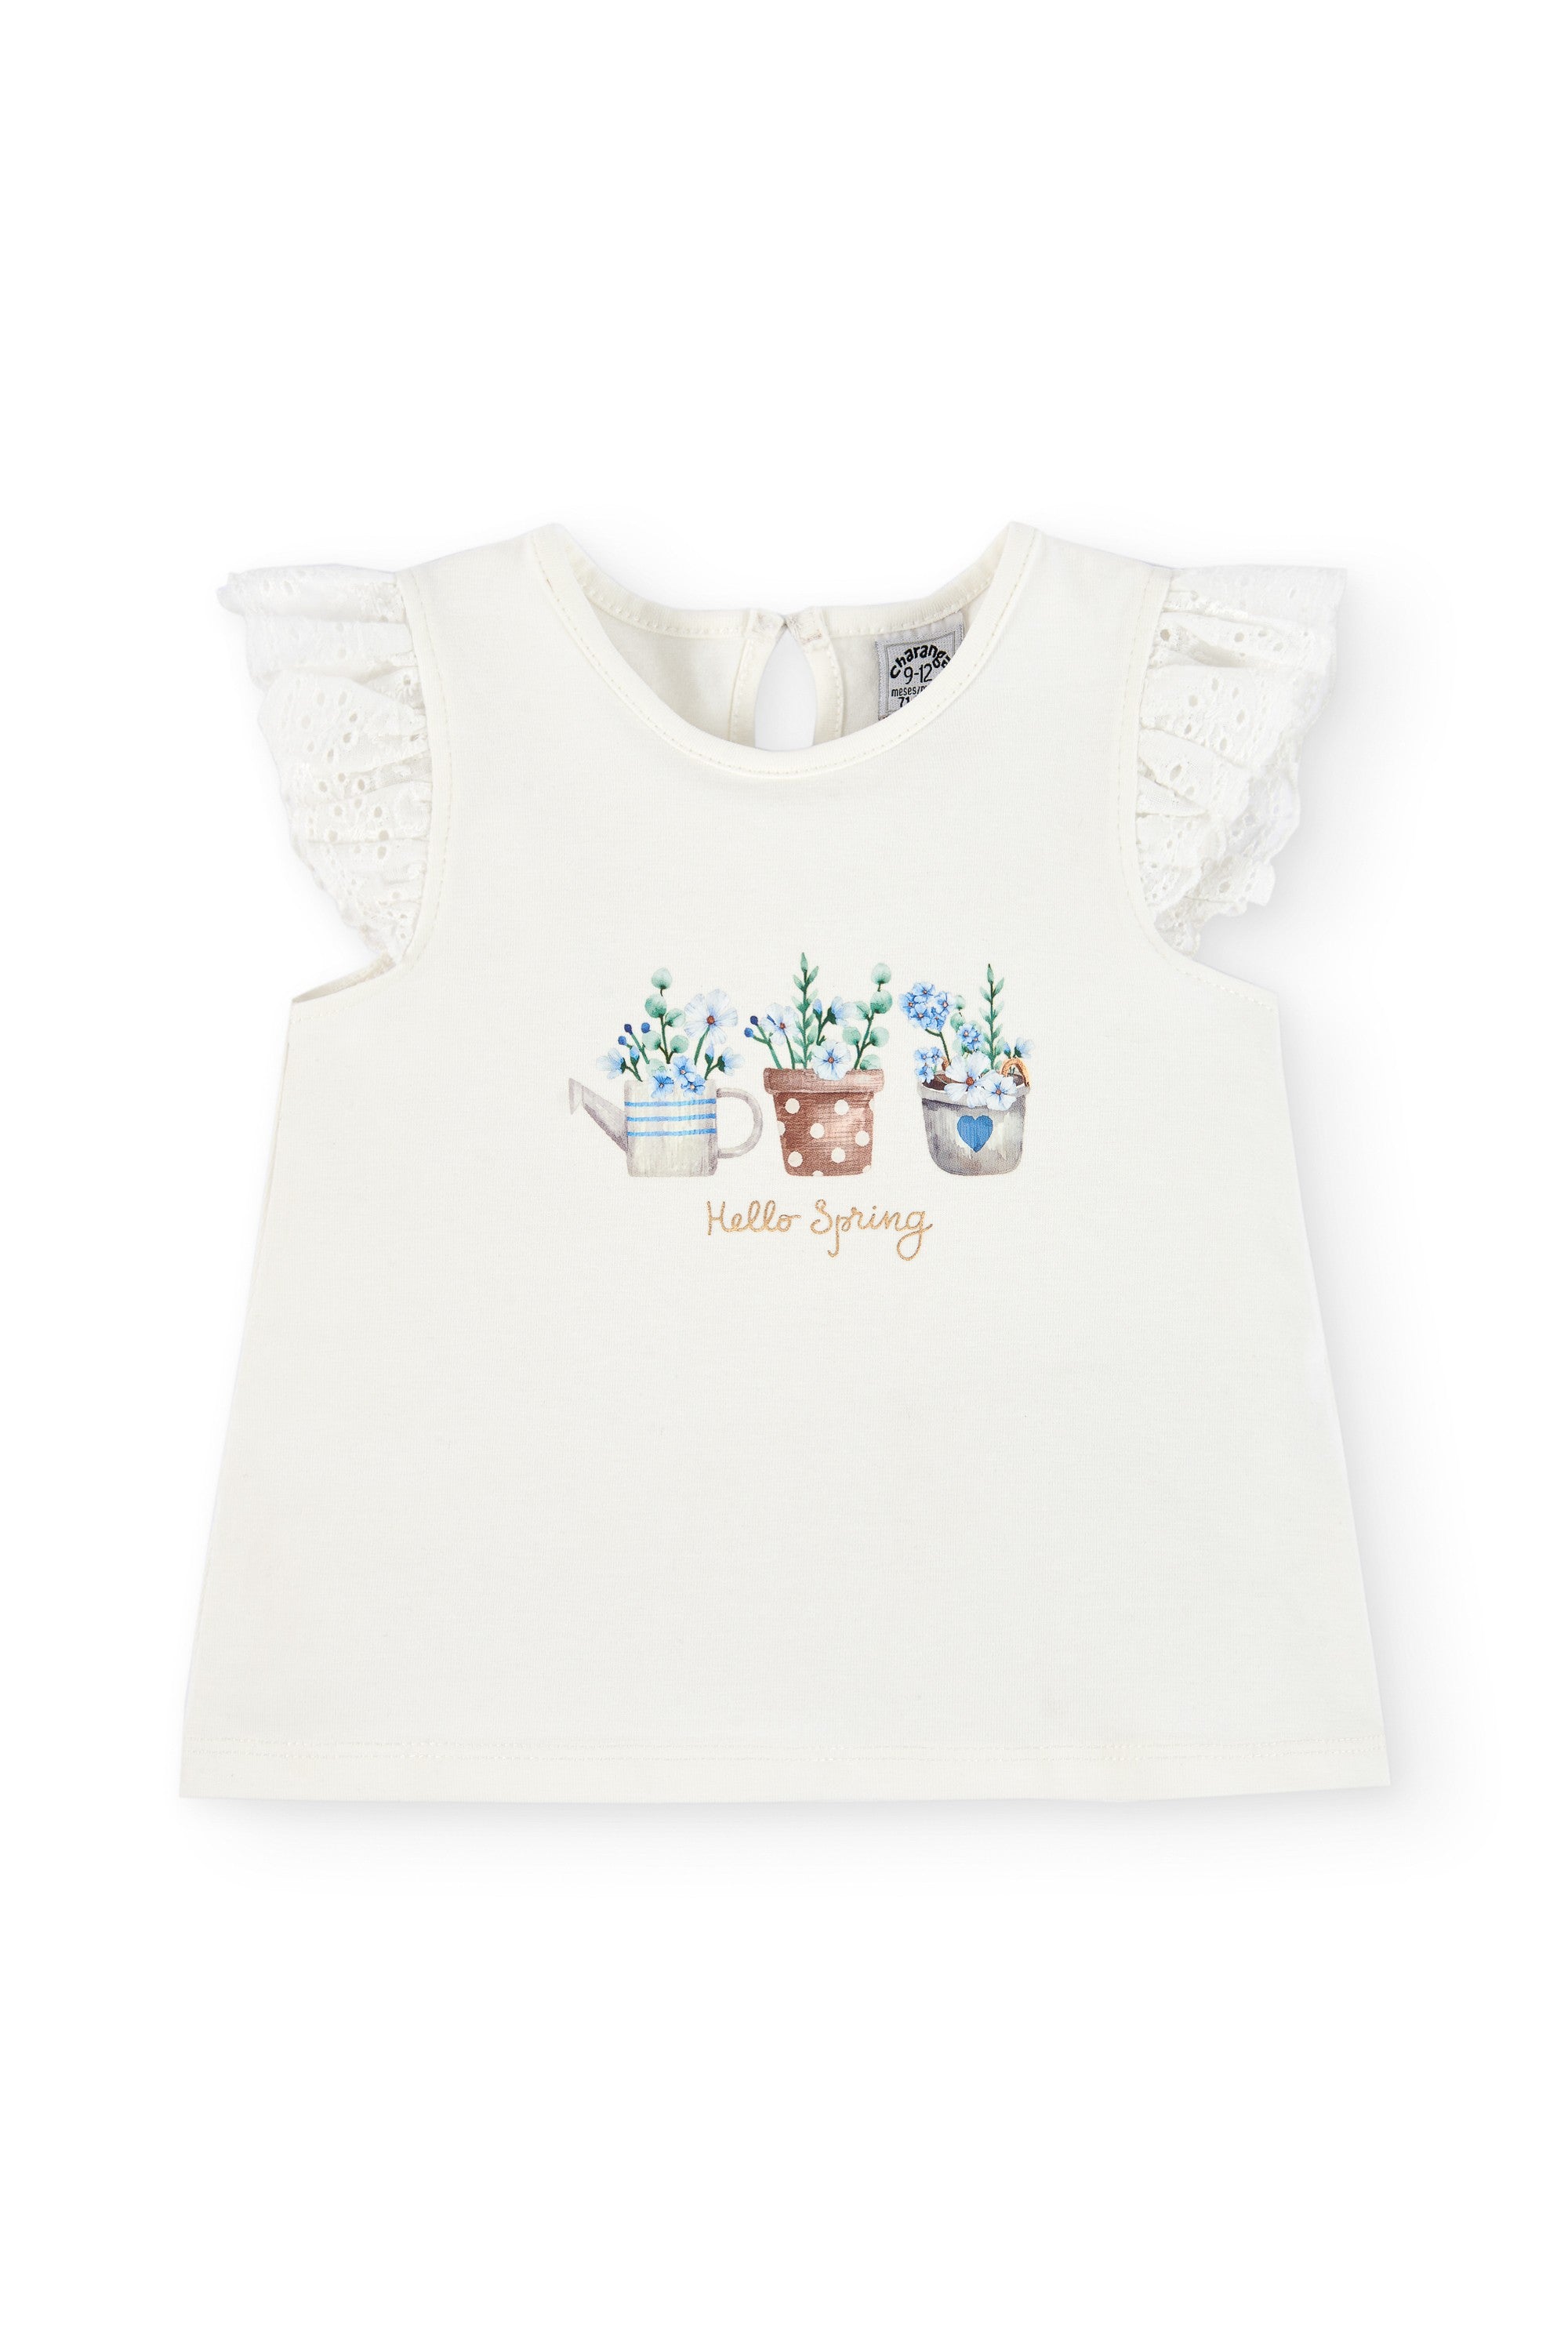 Camiseta de bebé crudo con dibujo VERANO/Outlet